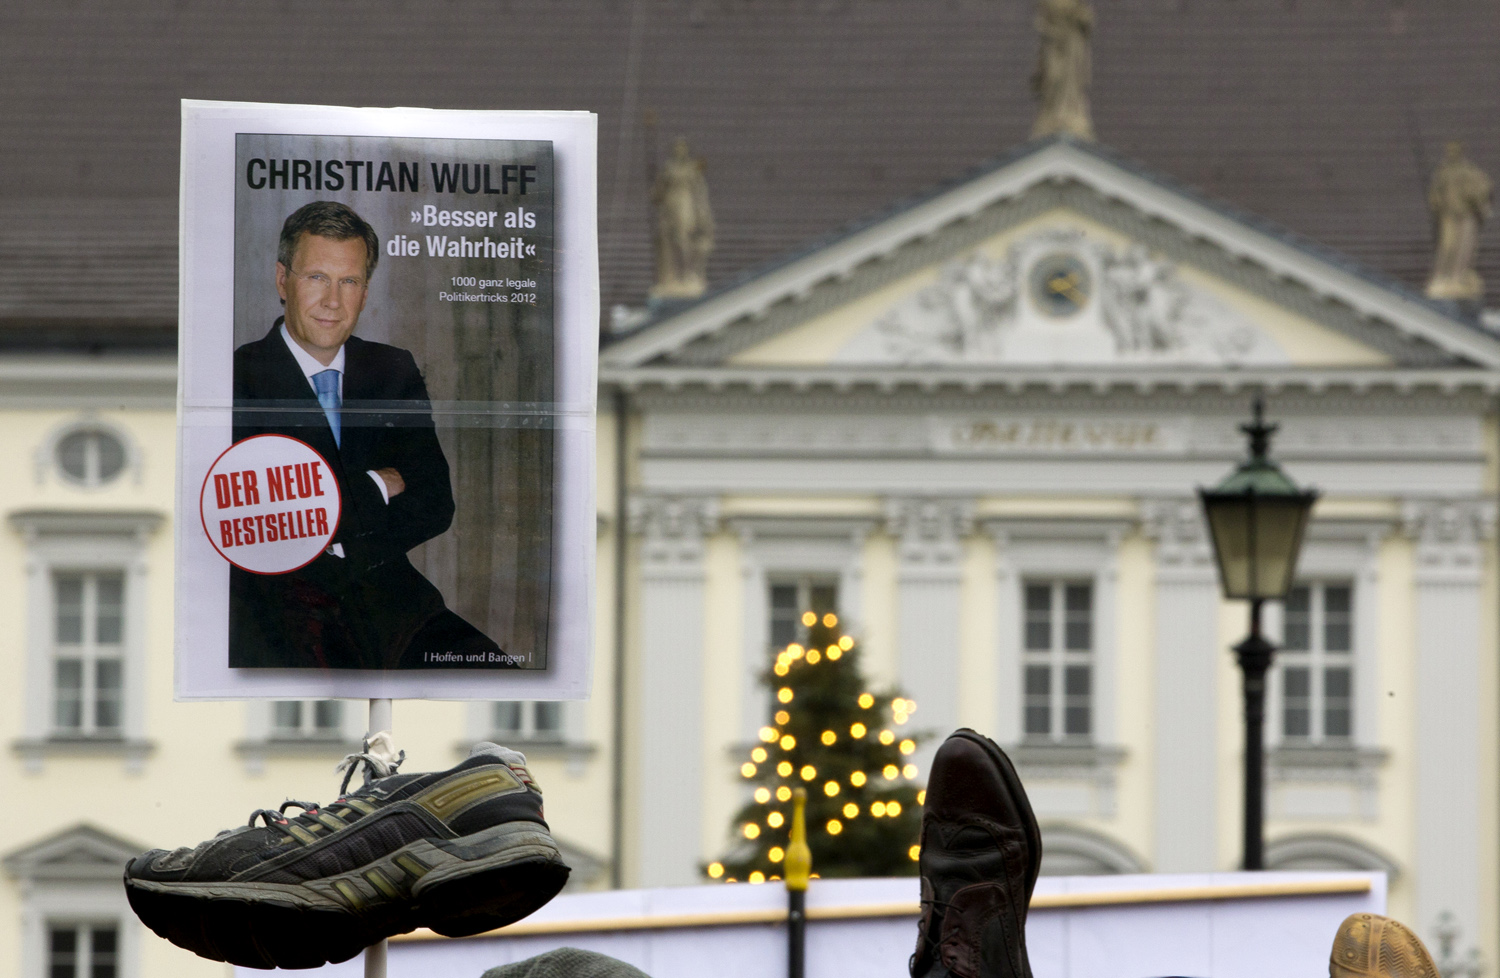 Christian Wulff új könyvslágere: ezer trükk politikusoknak - a gúnyos alcímű álborítót és a cipőket az államfő távozását követelők tartották a magasba a berlini elnöki palota előtt